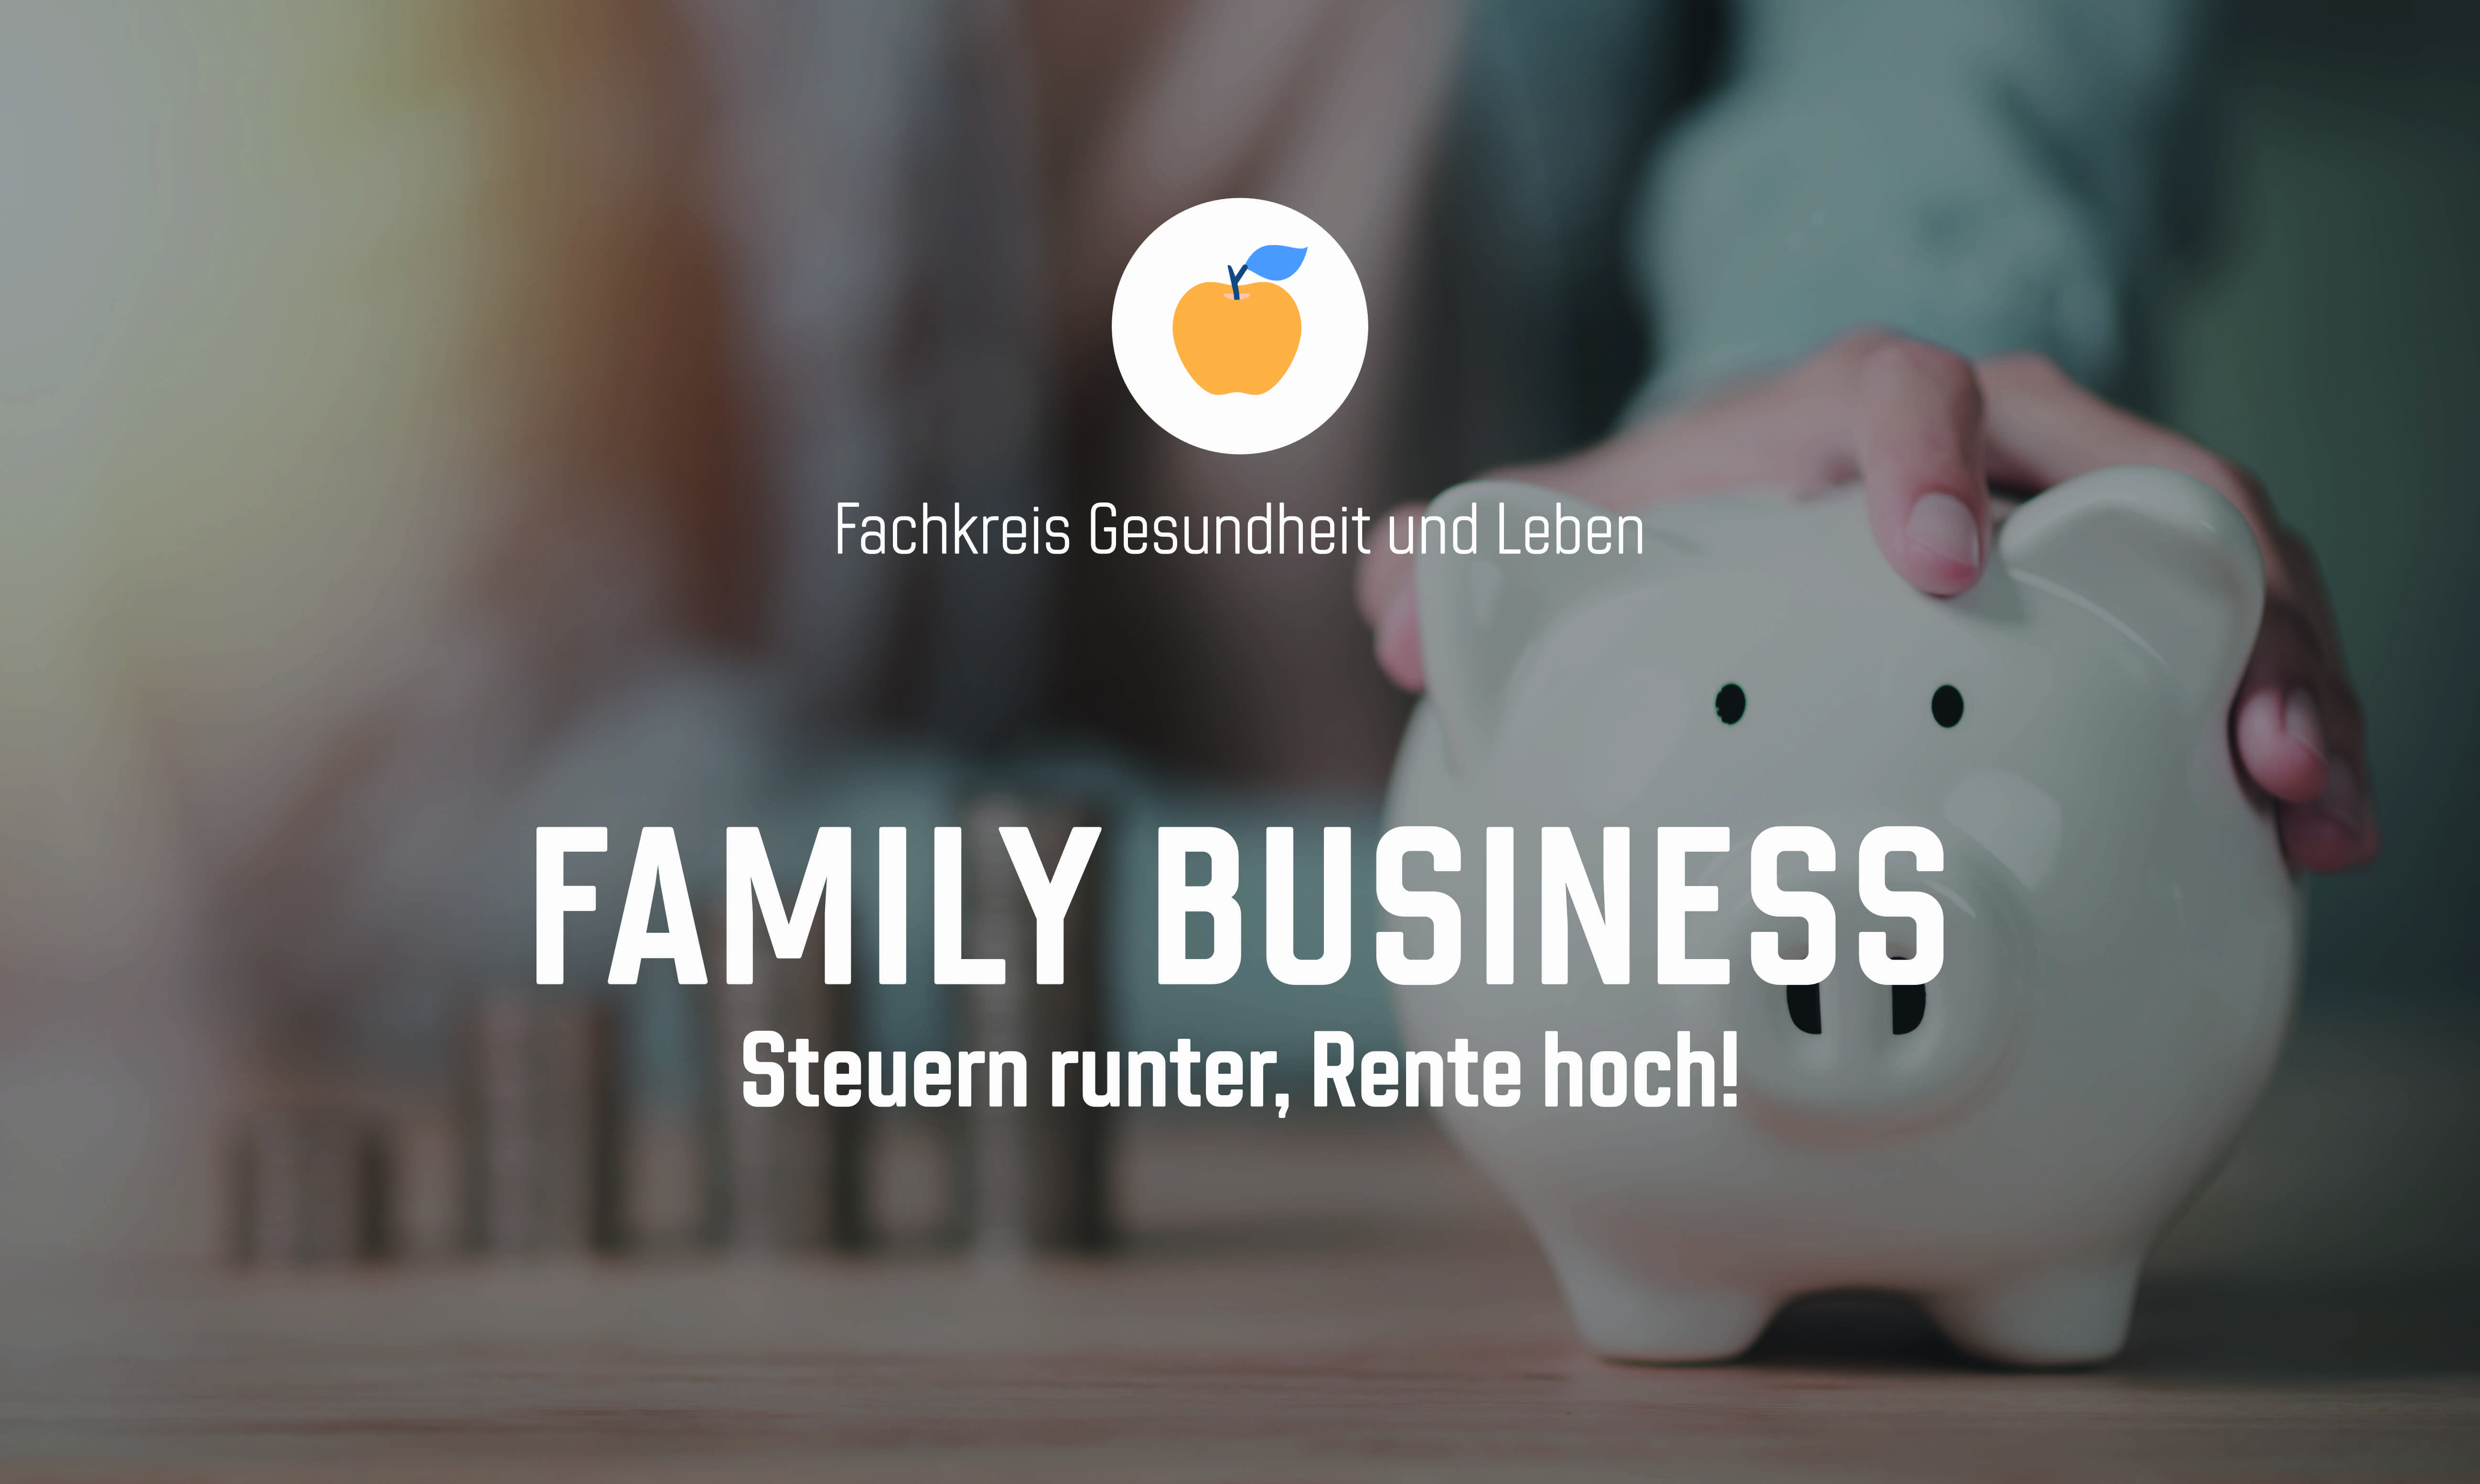 Family Business – Steuern runter, Rente hoch!